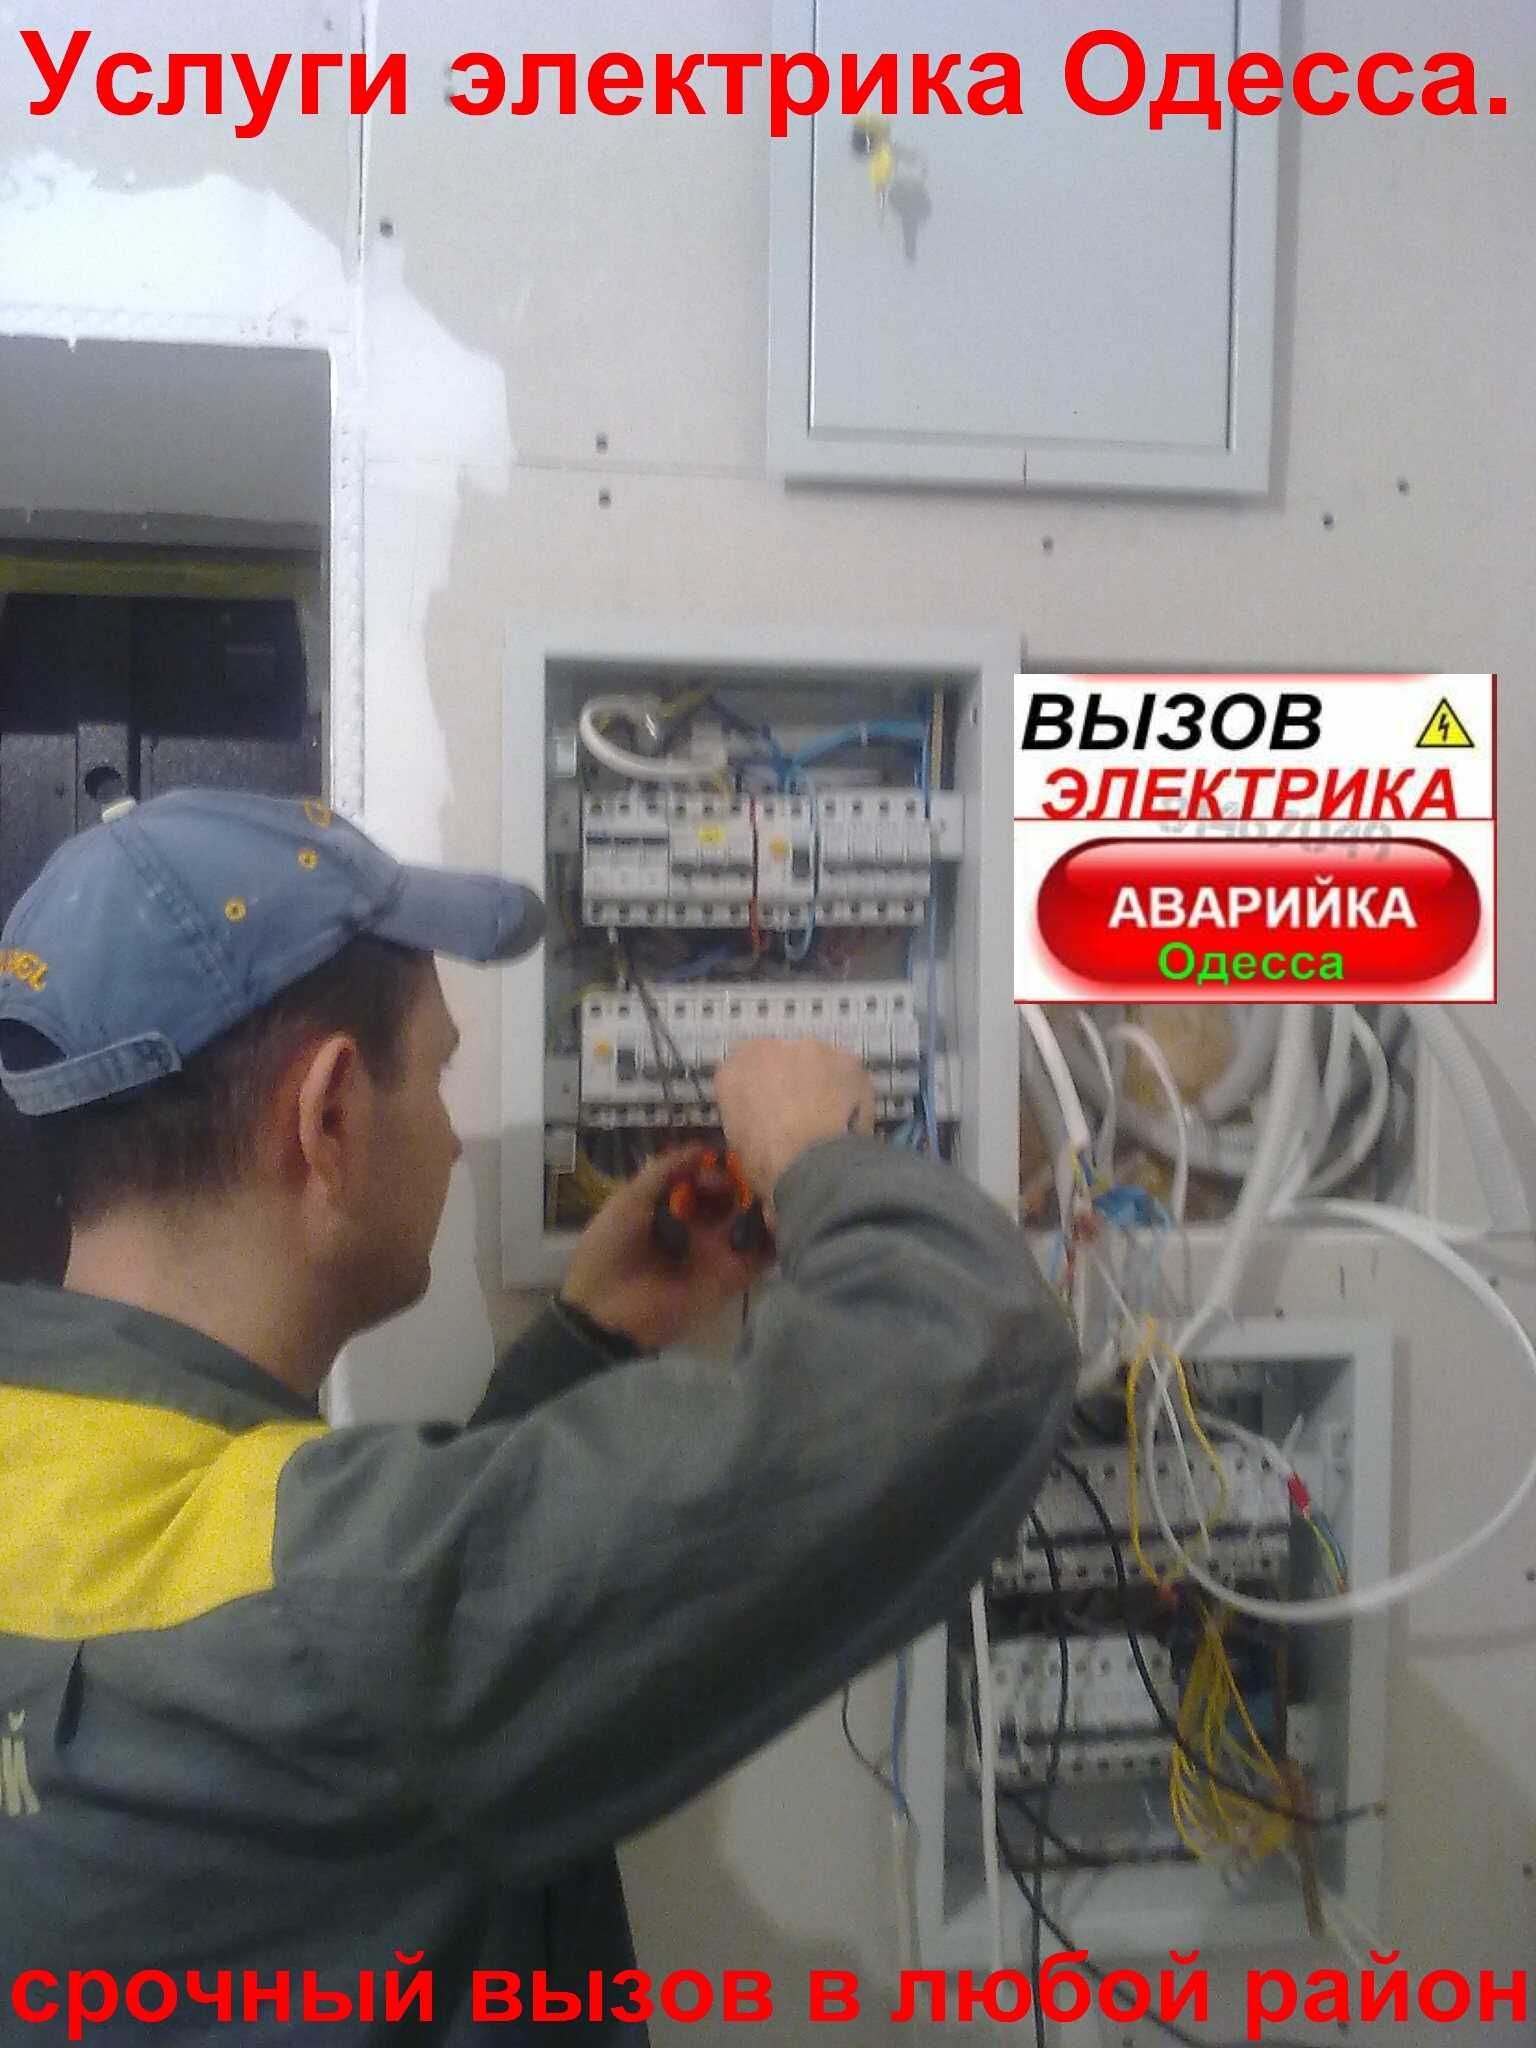 услуги электрика Одесса - таирово ,черёмушки ,центр,совиньйон.